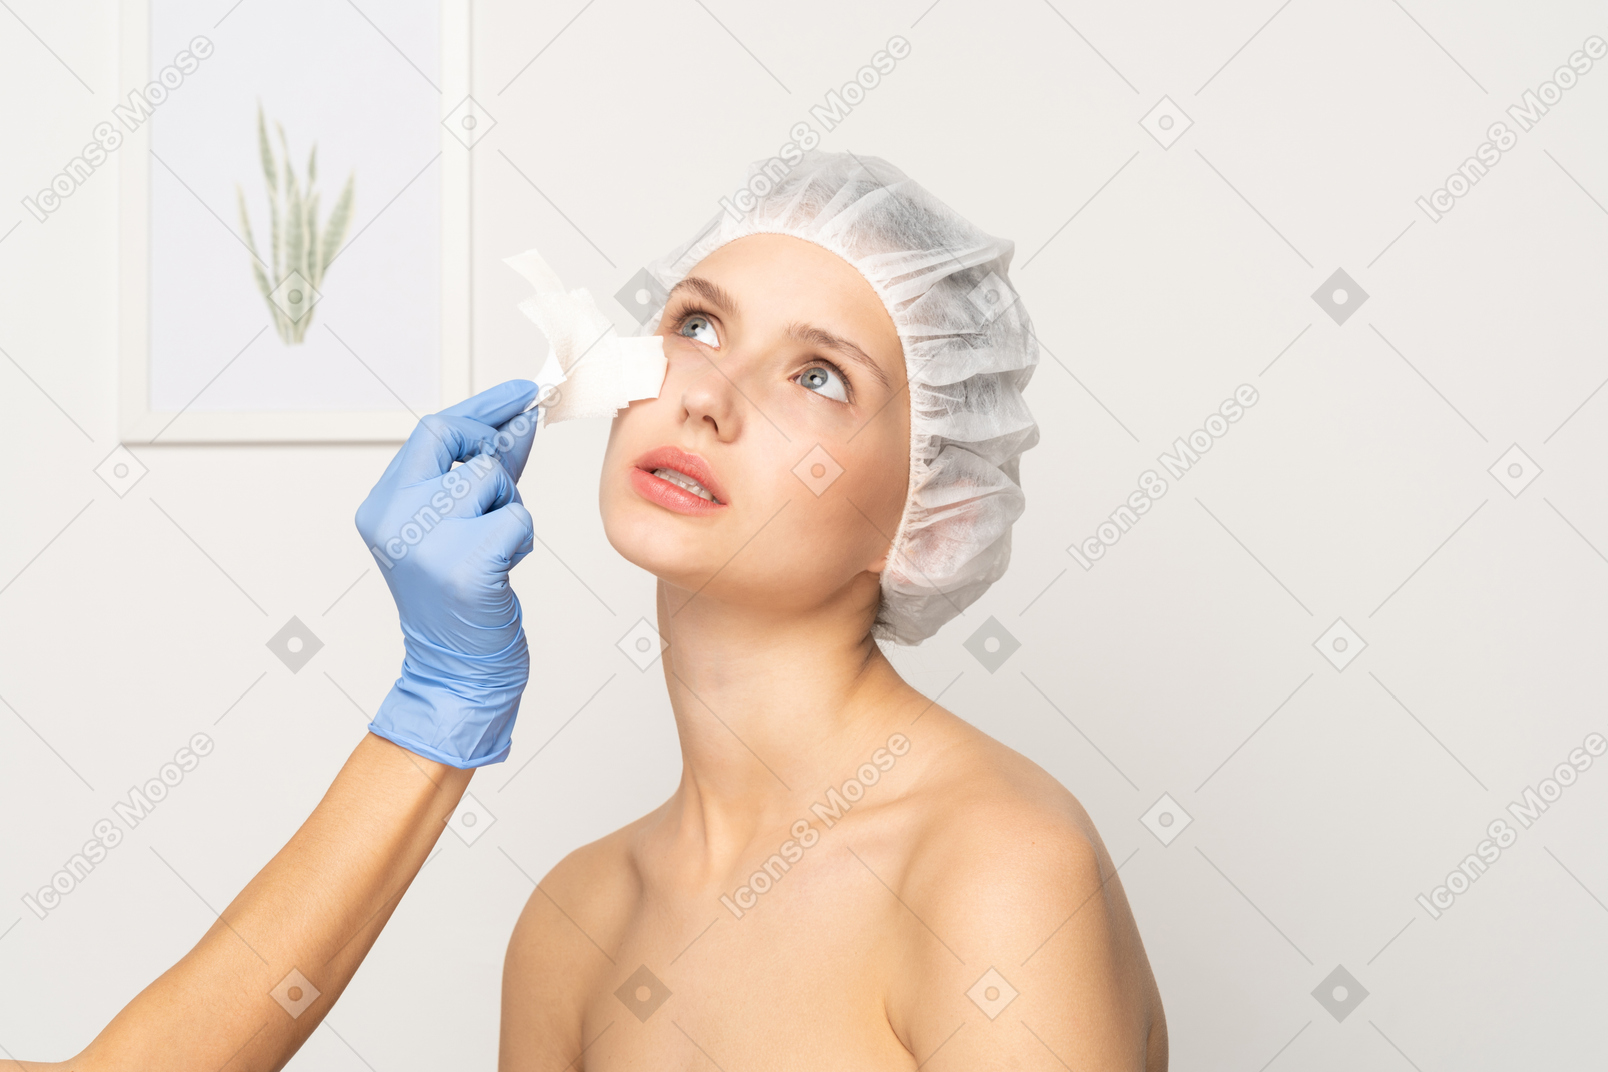 Médico quitando el parche médico de la nariz de una mujer joven